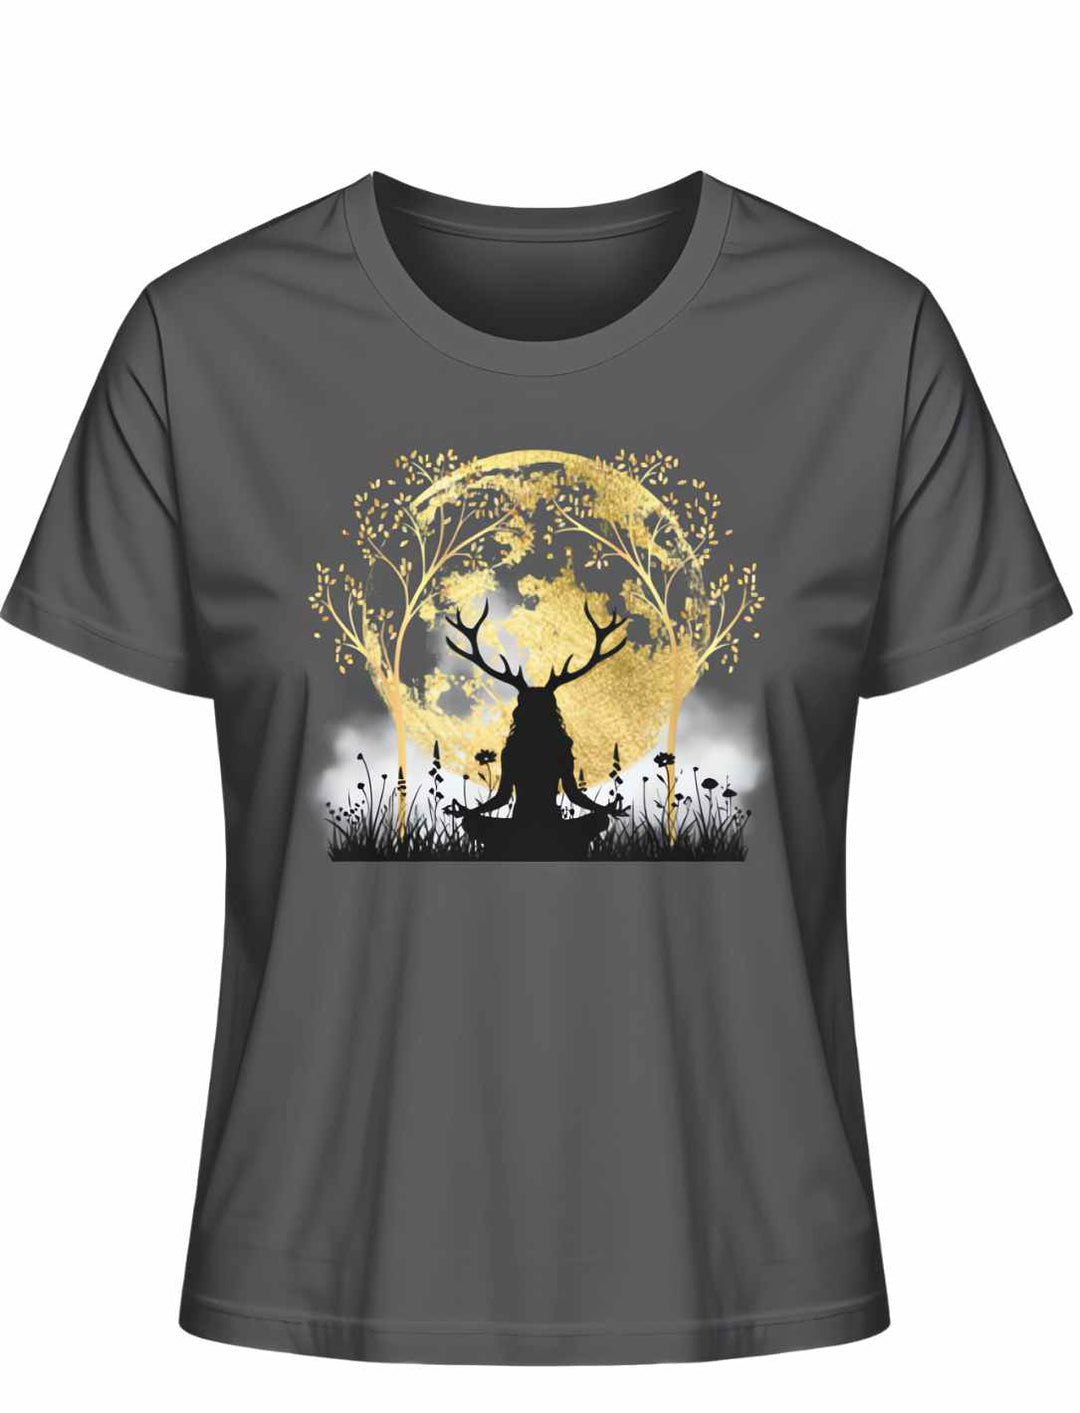 Anthrazitfarbenes 'Druidin der alten Wälder' Damen T-Shirt, das die Geheimnisse der Druiden-Mystik in modernem Design einfängt